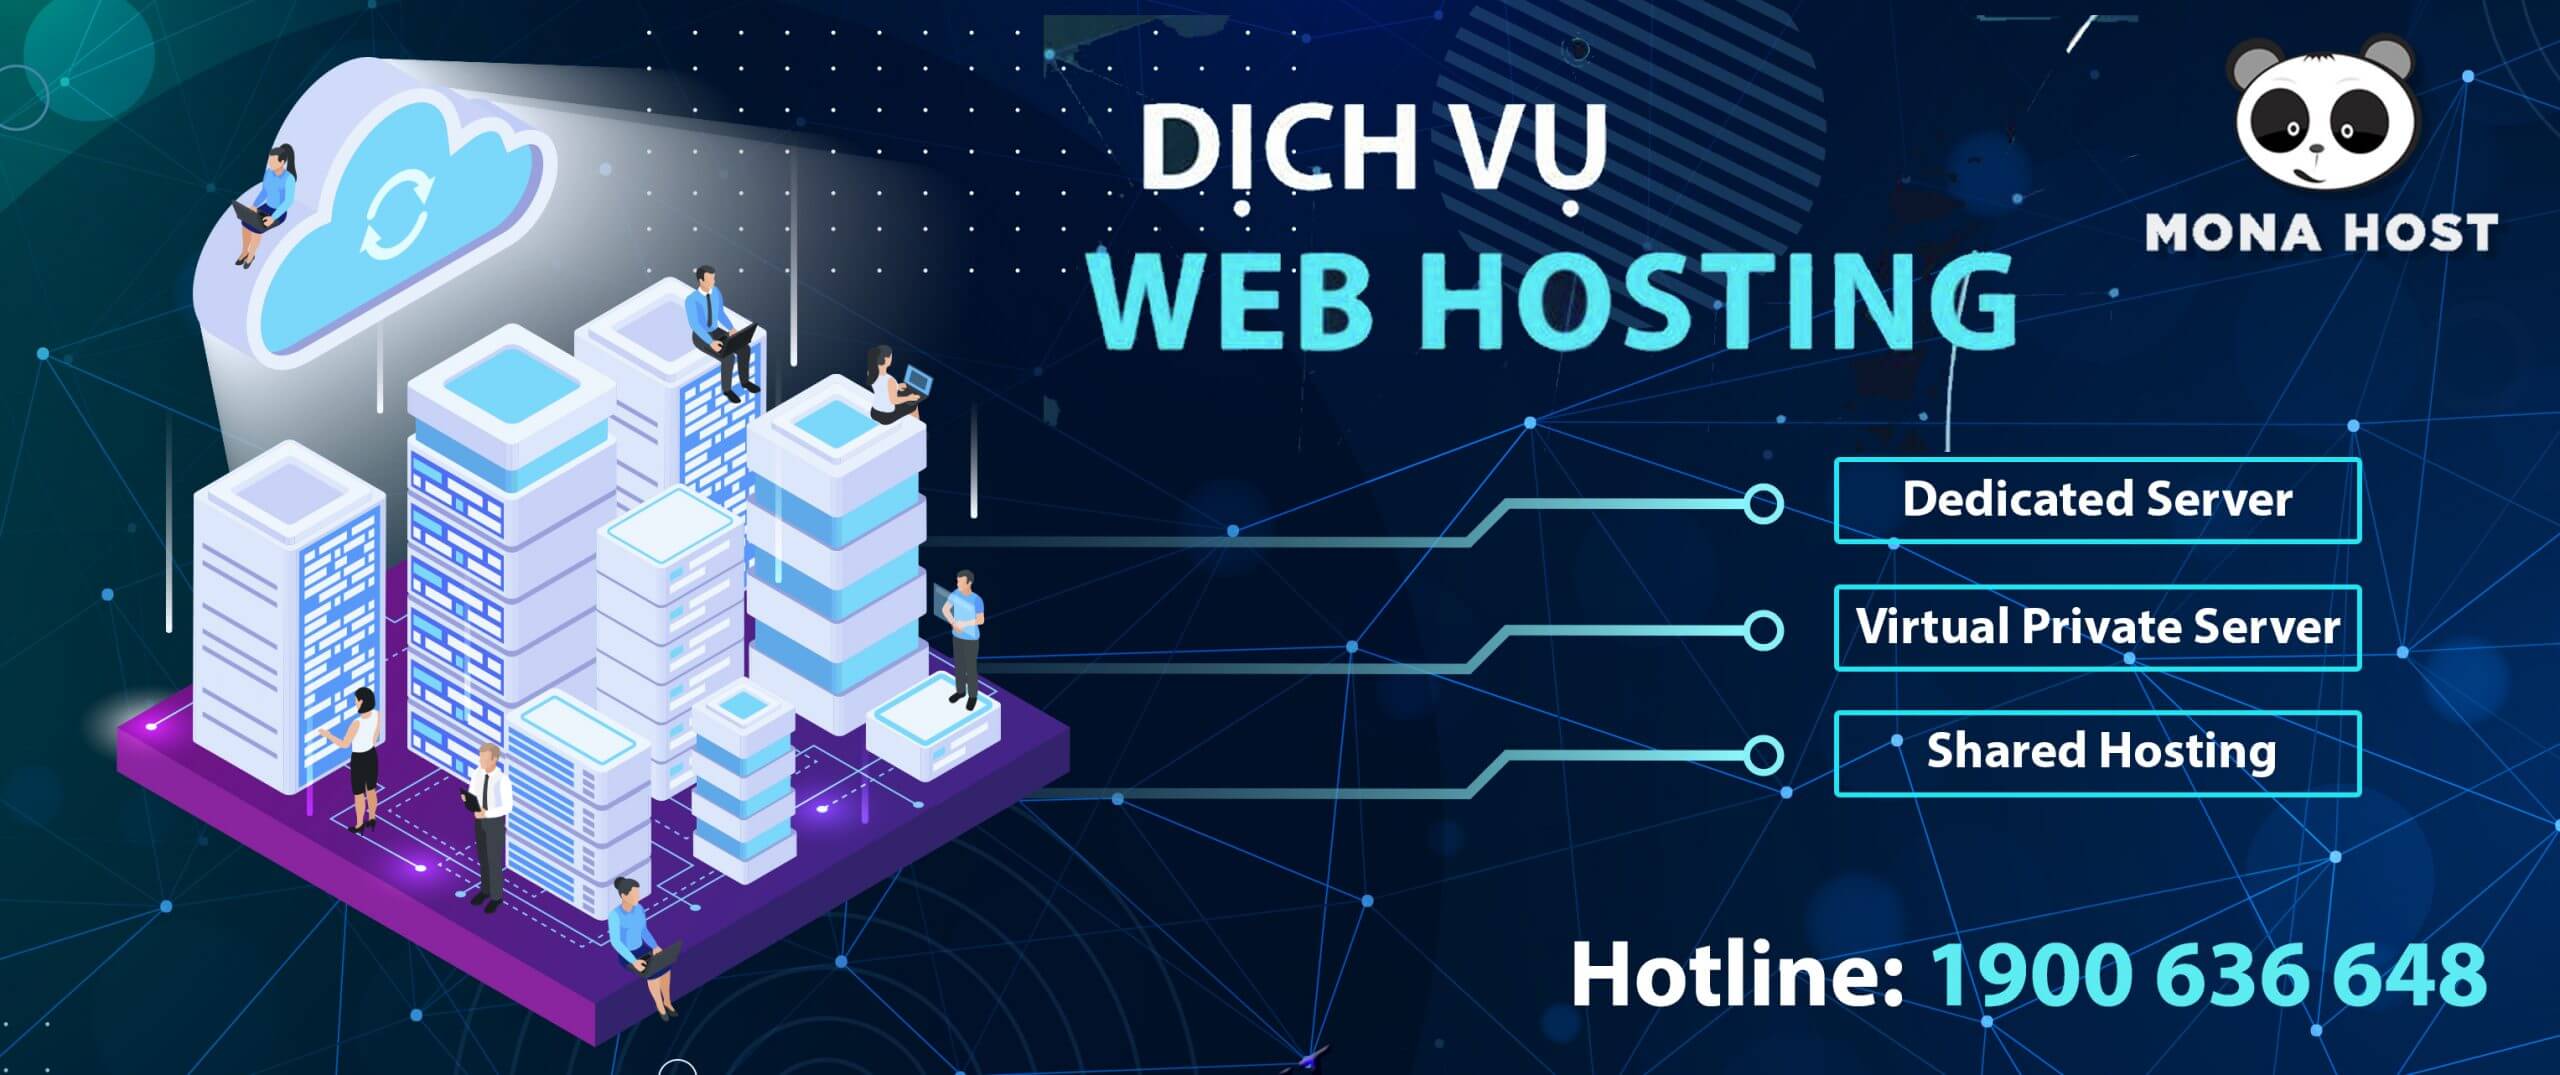 Mona Media - Dịch vụ web hosting chất lượng